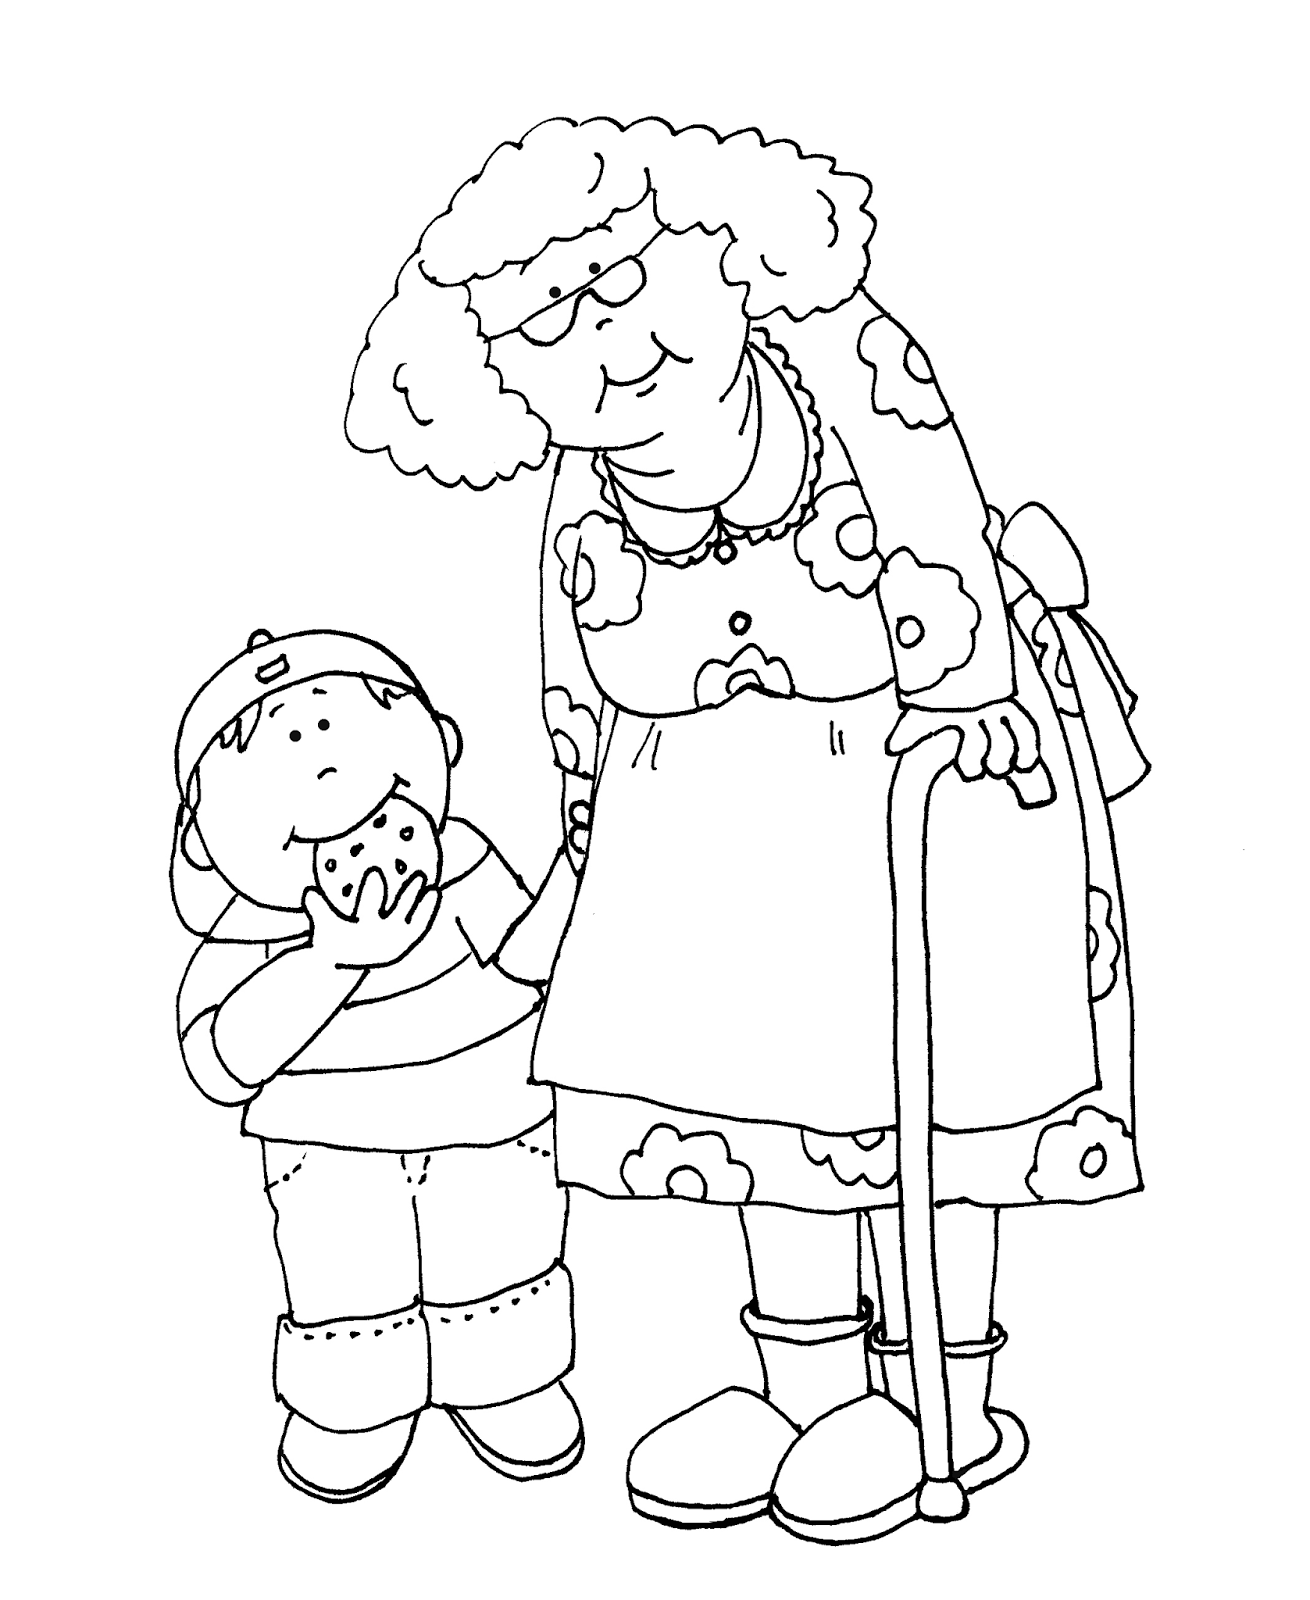 Раскраска бабушка. День пожилого человека раскраска. Бабушка рисунок. Раскраски ко Дню пожилого человека для детей.